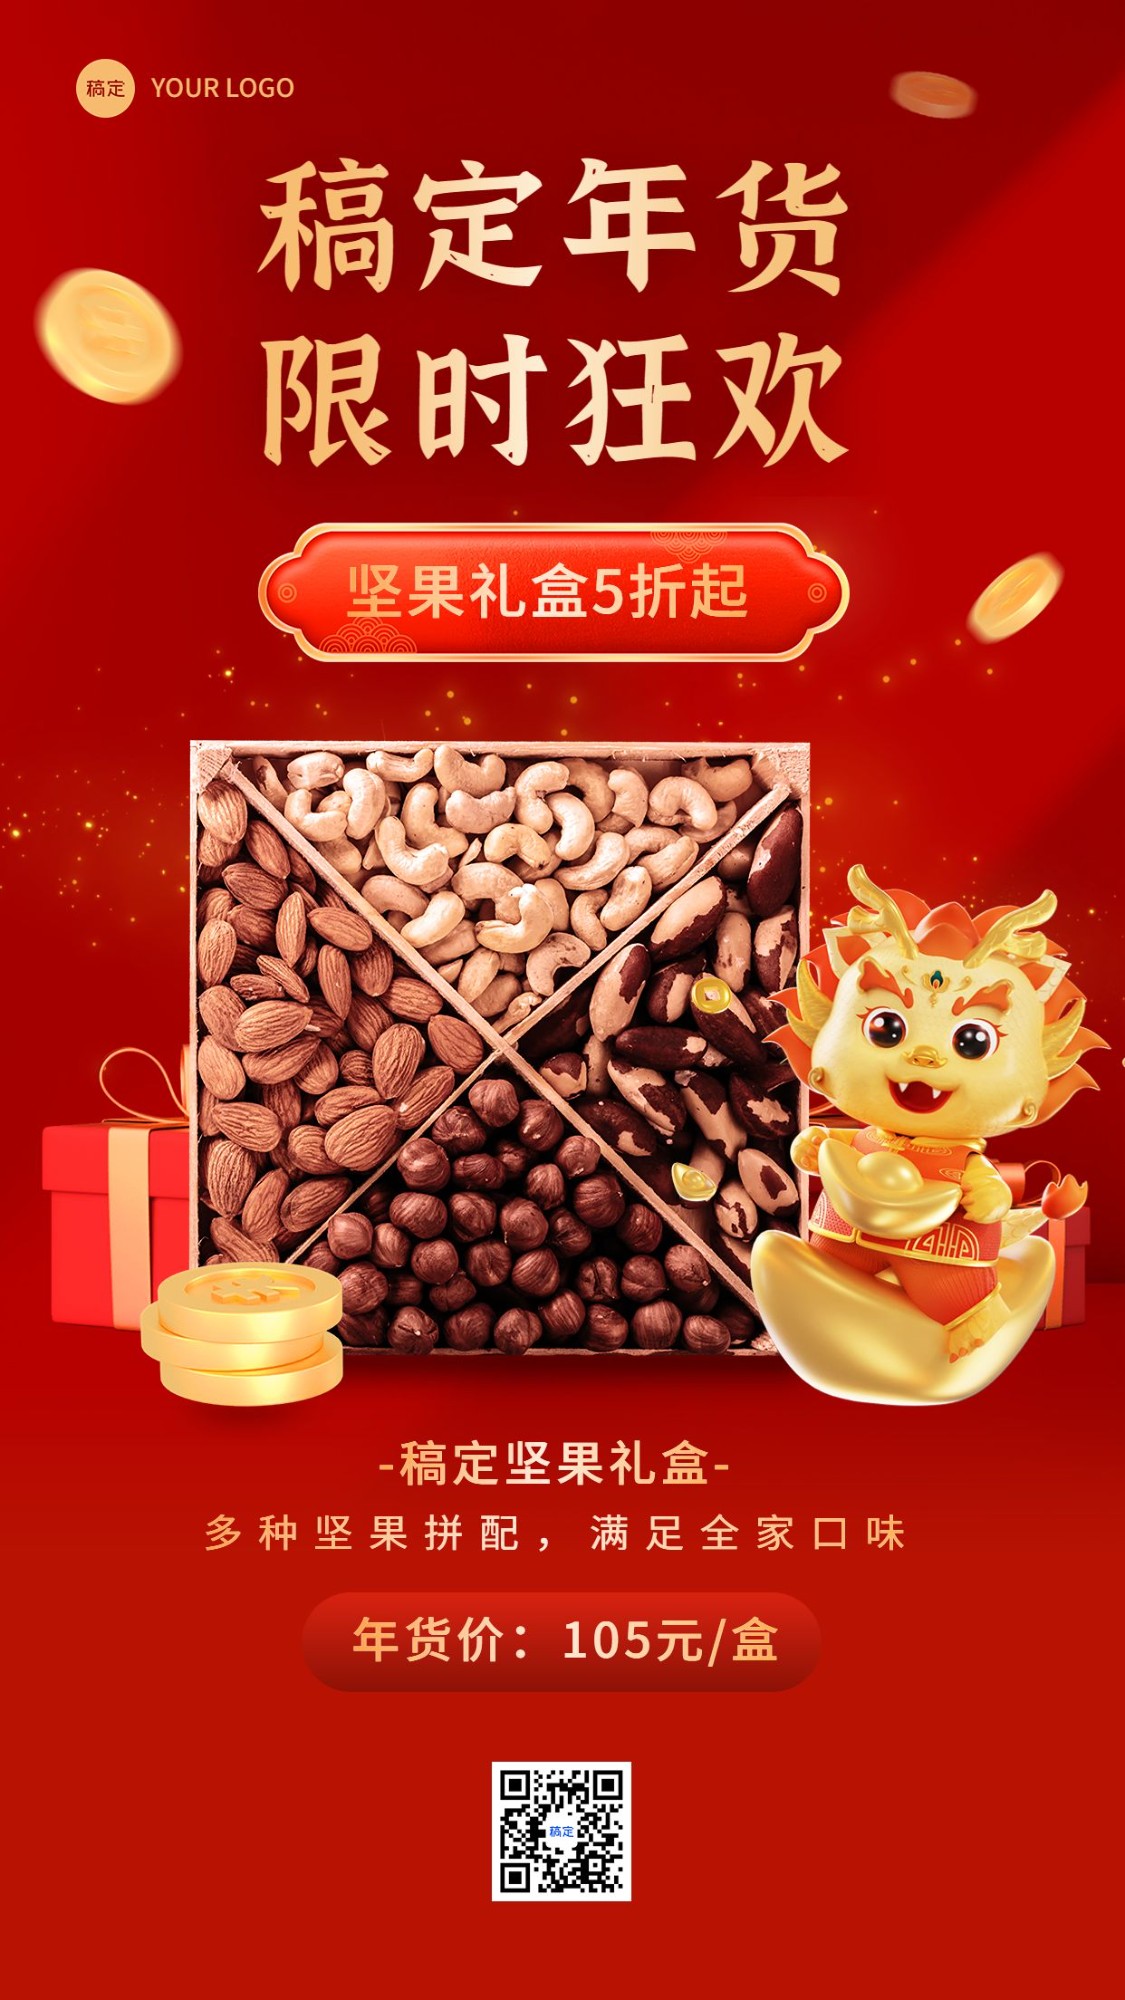 春节年货促销活动产品展示营销3D手机海报预览效果